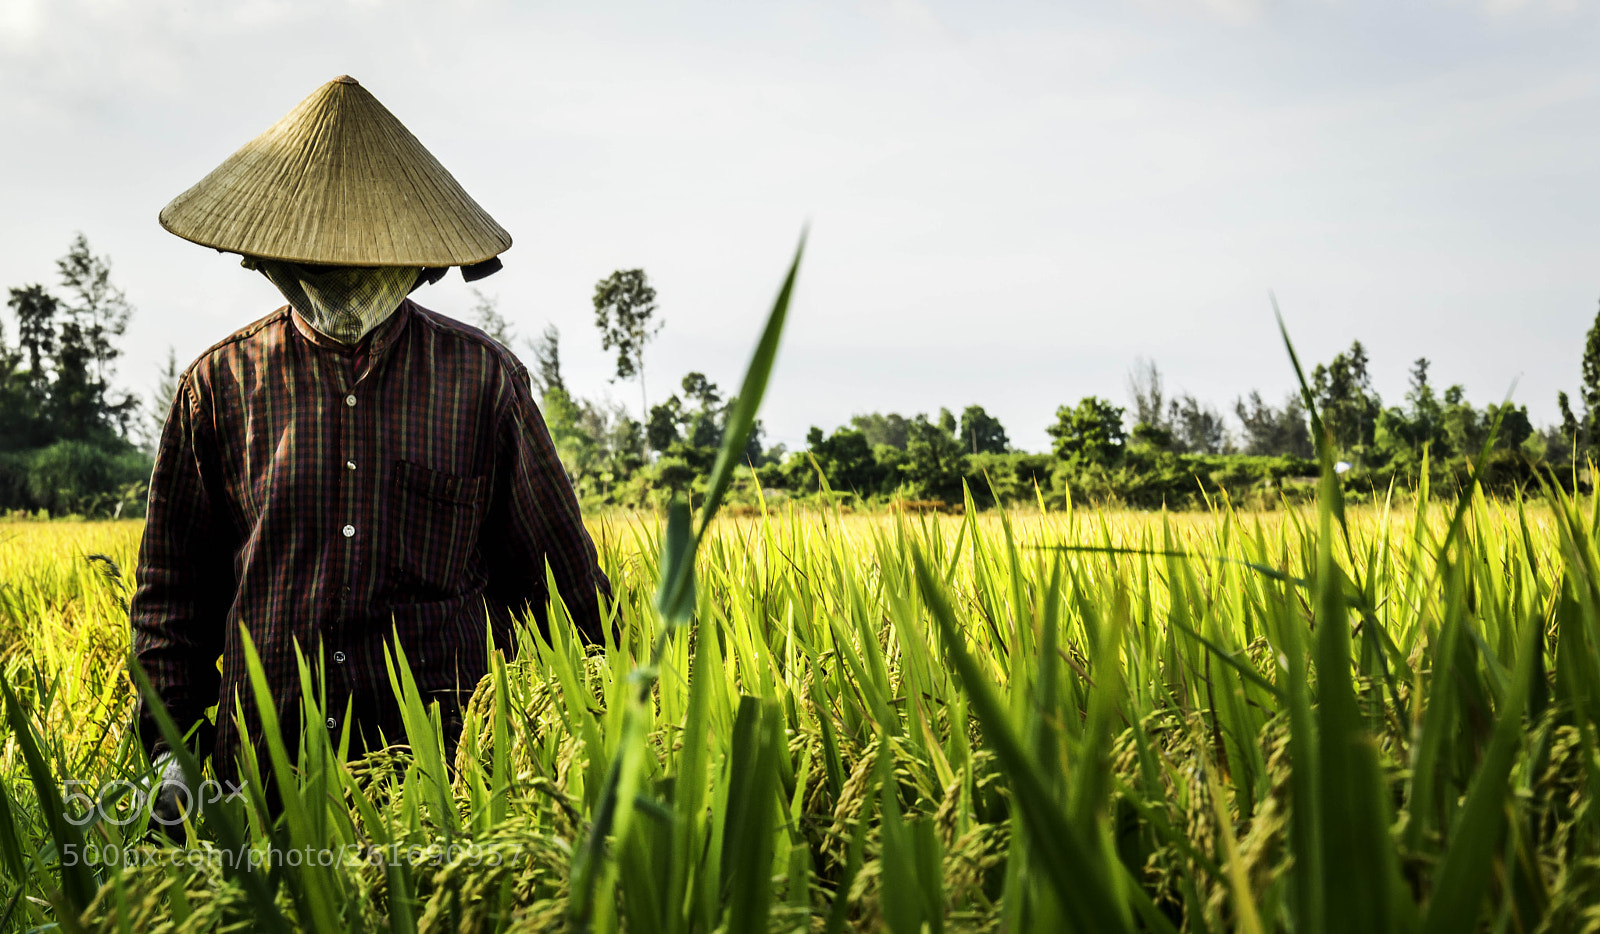 Nikon D3200 sample photo. The rice farmer photography